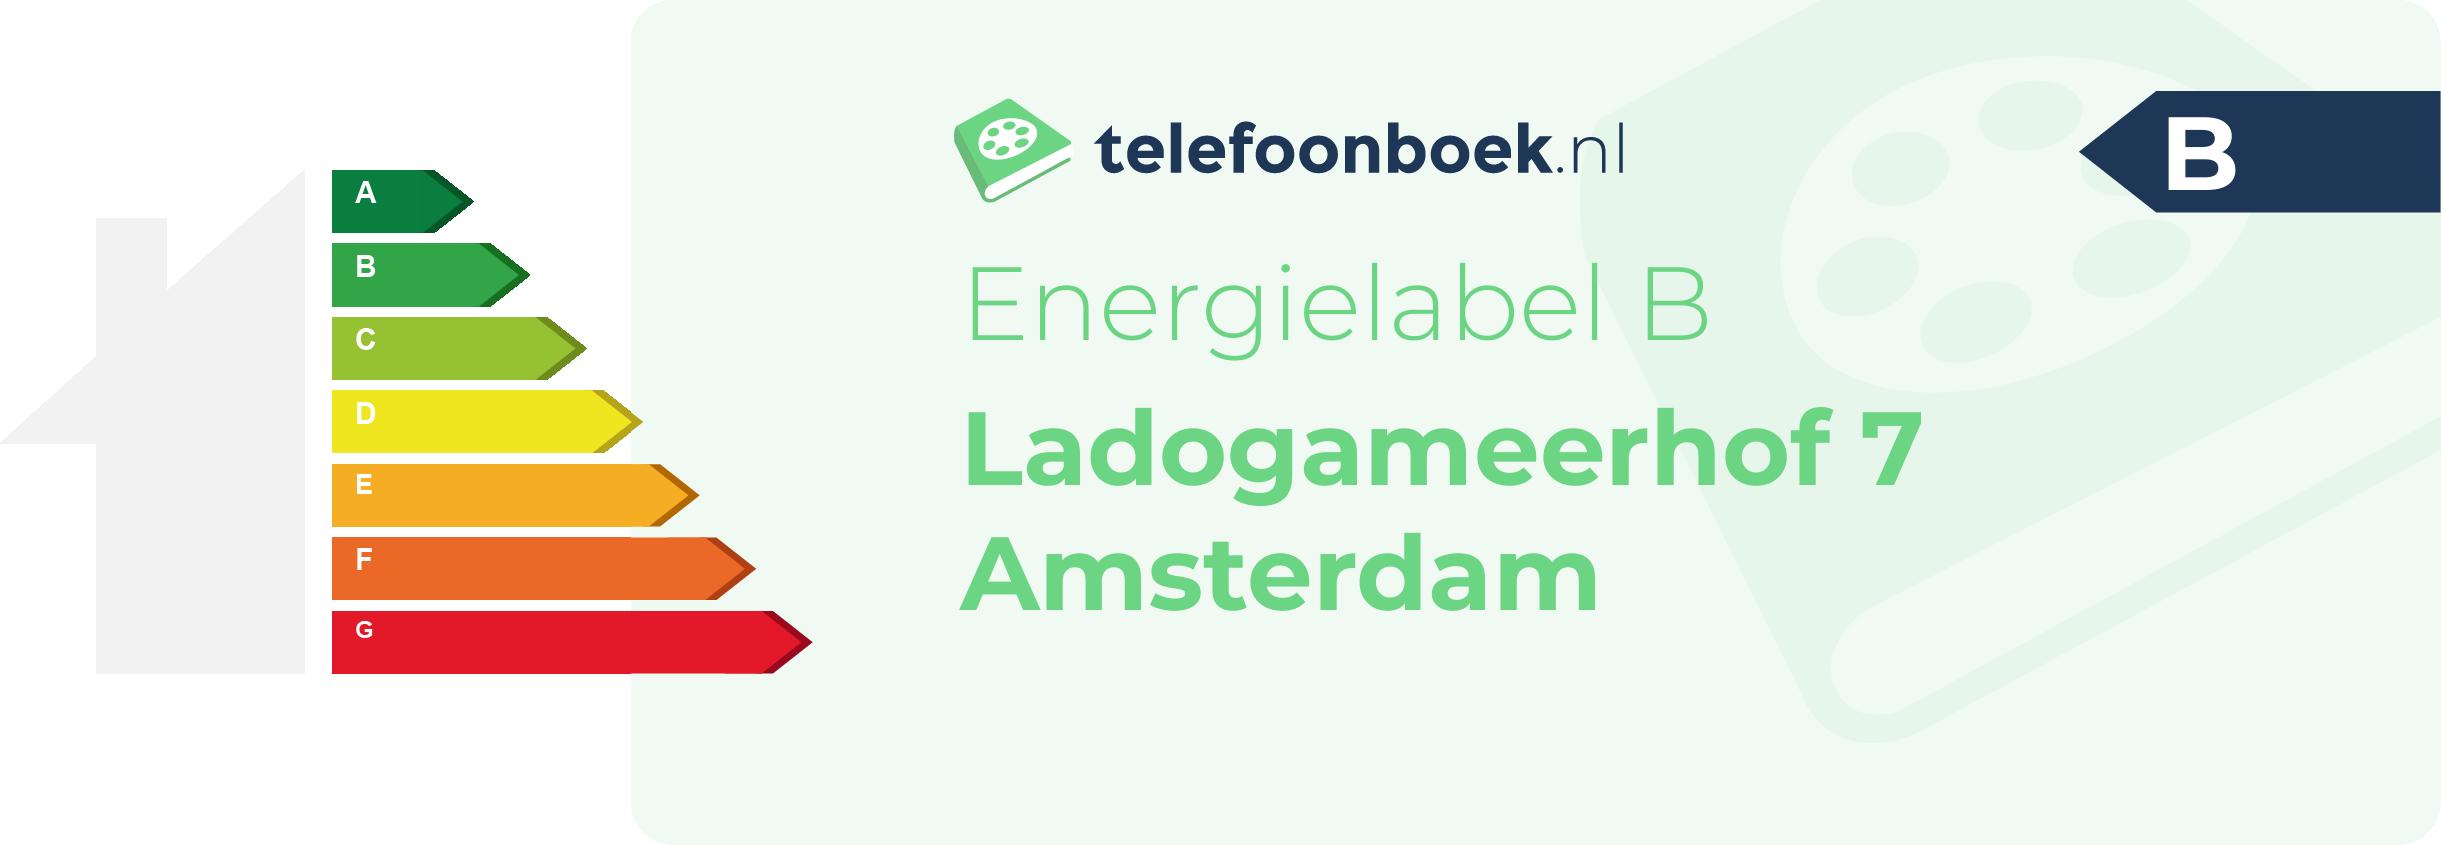 Energielabel Ladogameerhof 7 Amsterdam